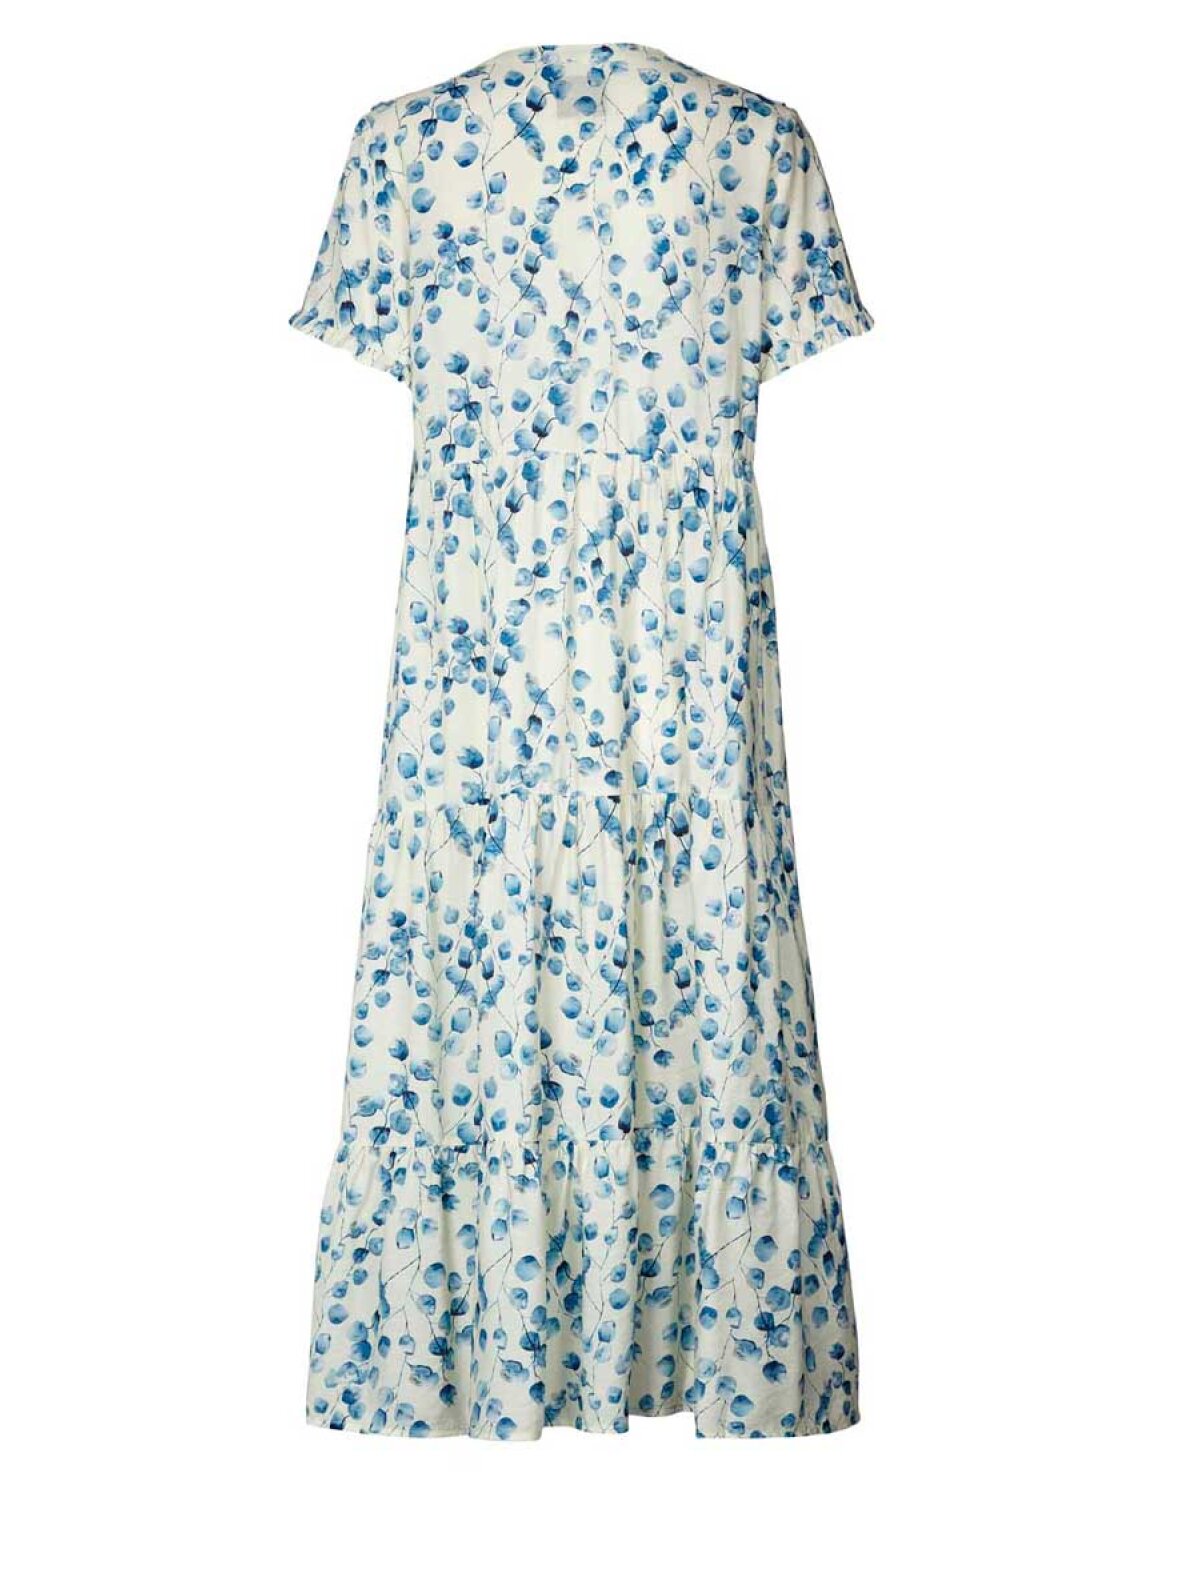 A'POKE - Lollys Laundry Freddy Dress Creme - Shop blå kjole